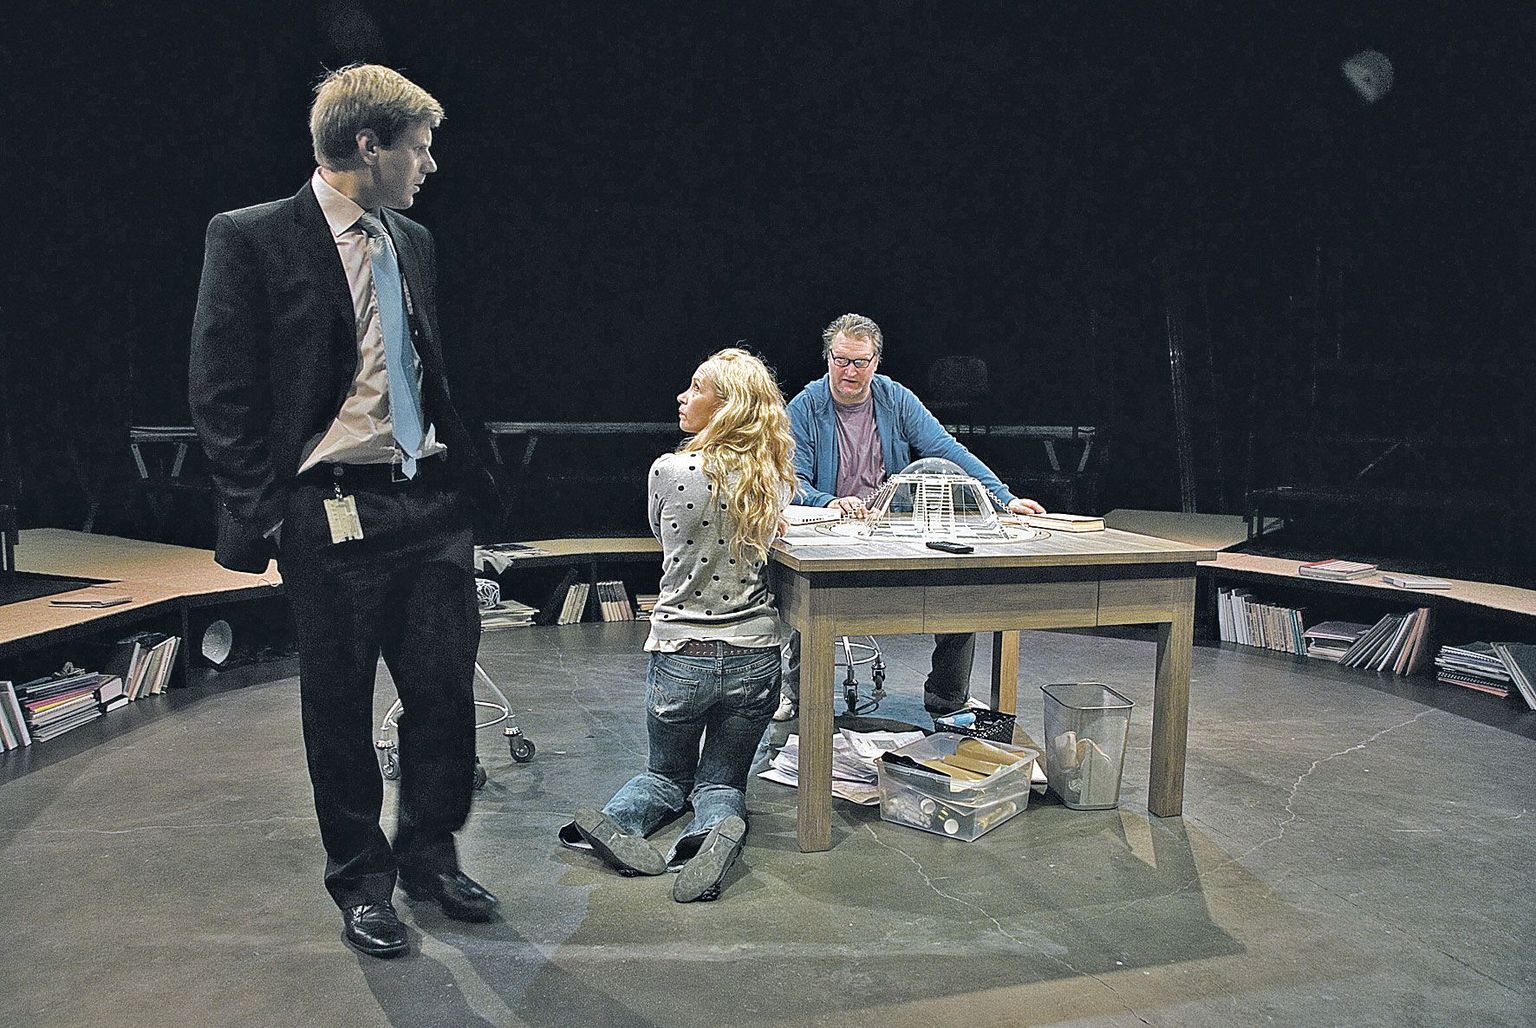 Laual on klaasist maja makett. Selle juures on lavastaja Olavi (paremalt, Indrek Taalmaa) ja tema naine, teatrikunstnik Saara (Marika Barabanštšikova). Nende vestlust jälgib lavastuste produtsent Aleks (Karol Kuntsel).